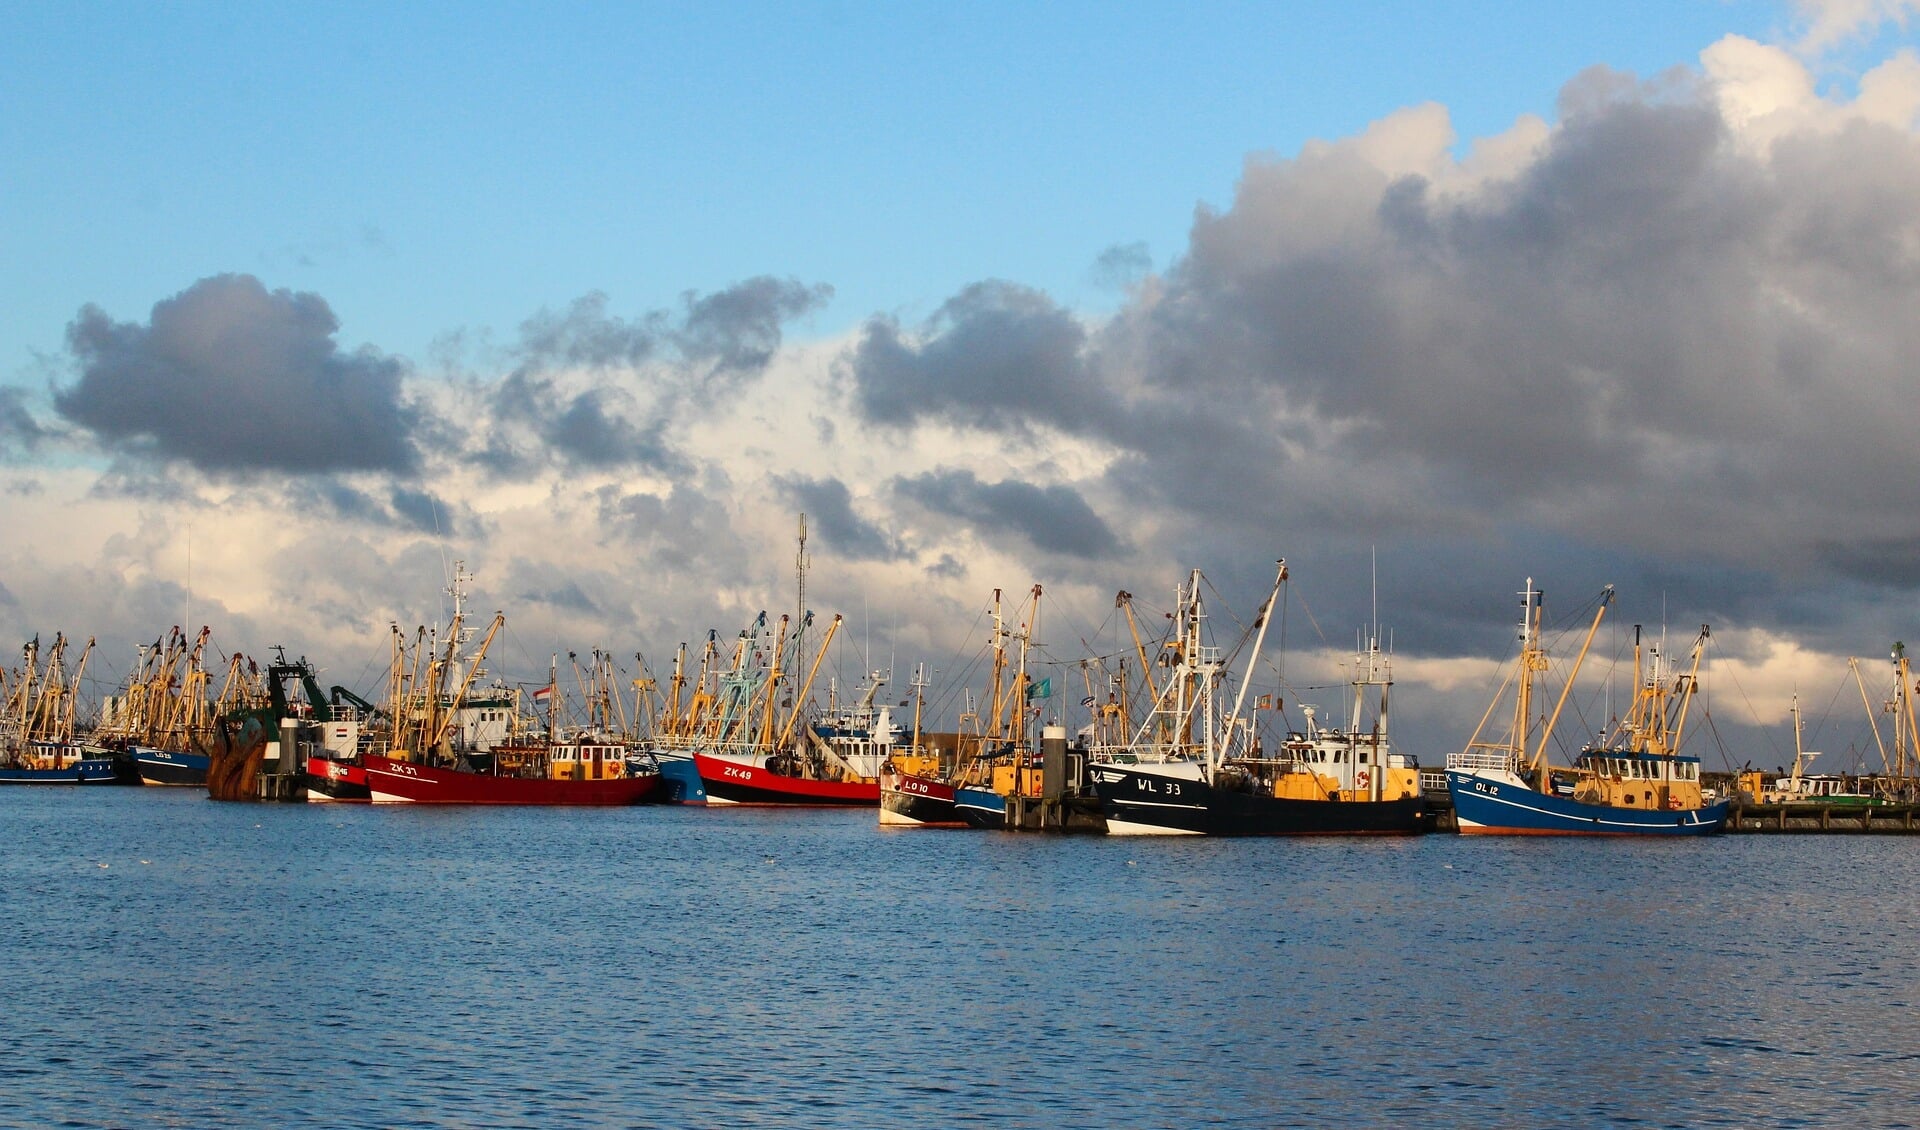 Vissersboten in de haven van Lauwersoog.